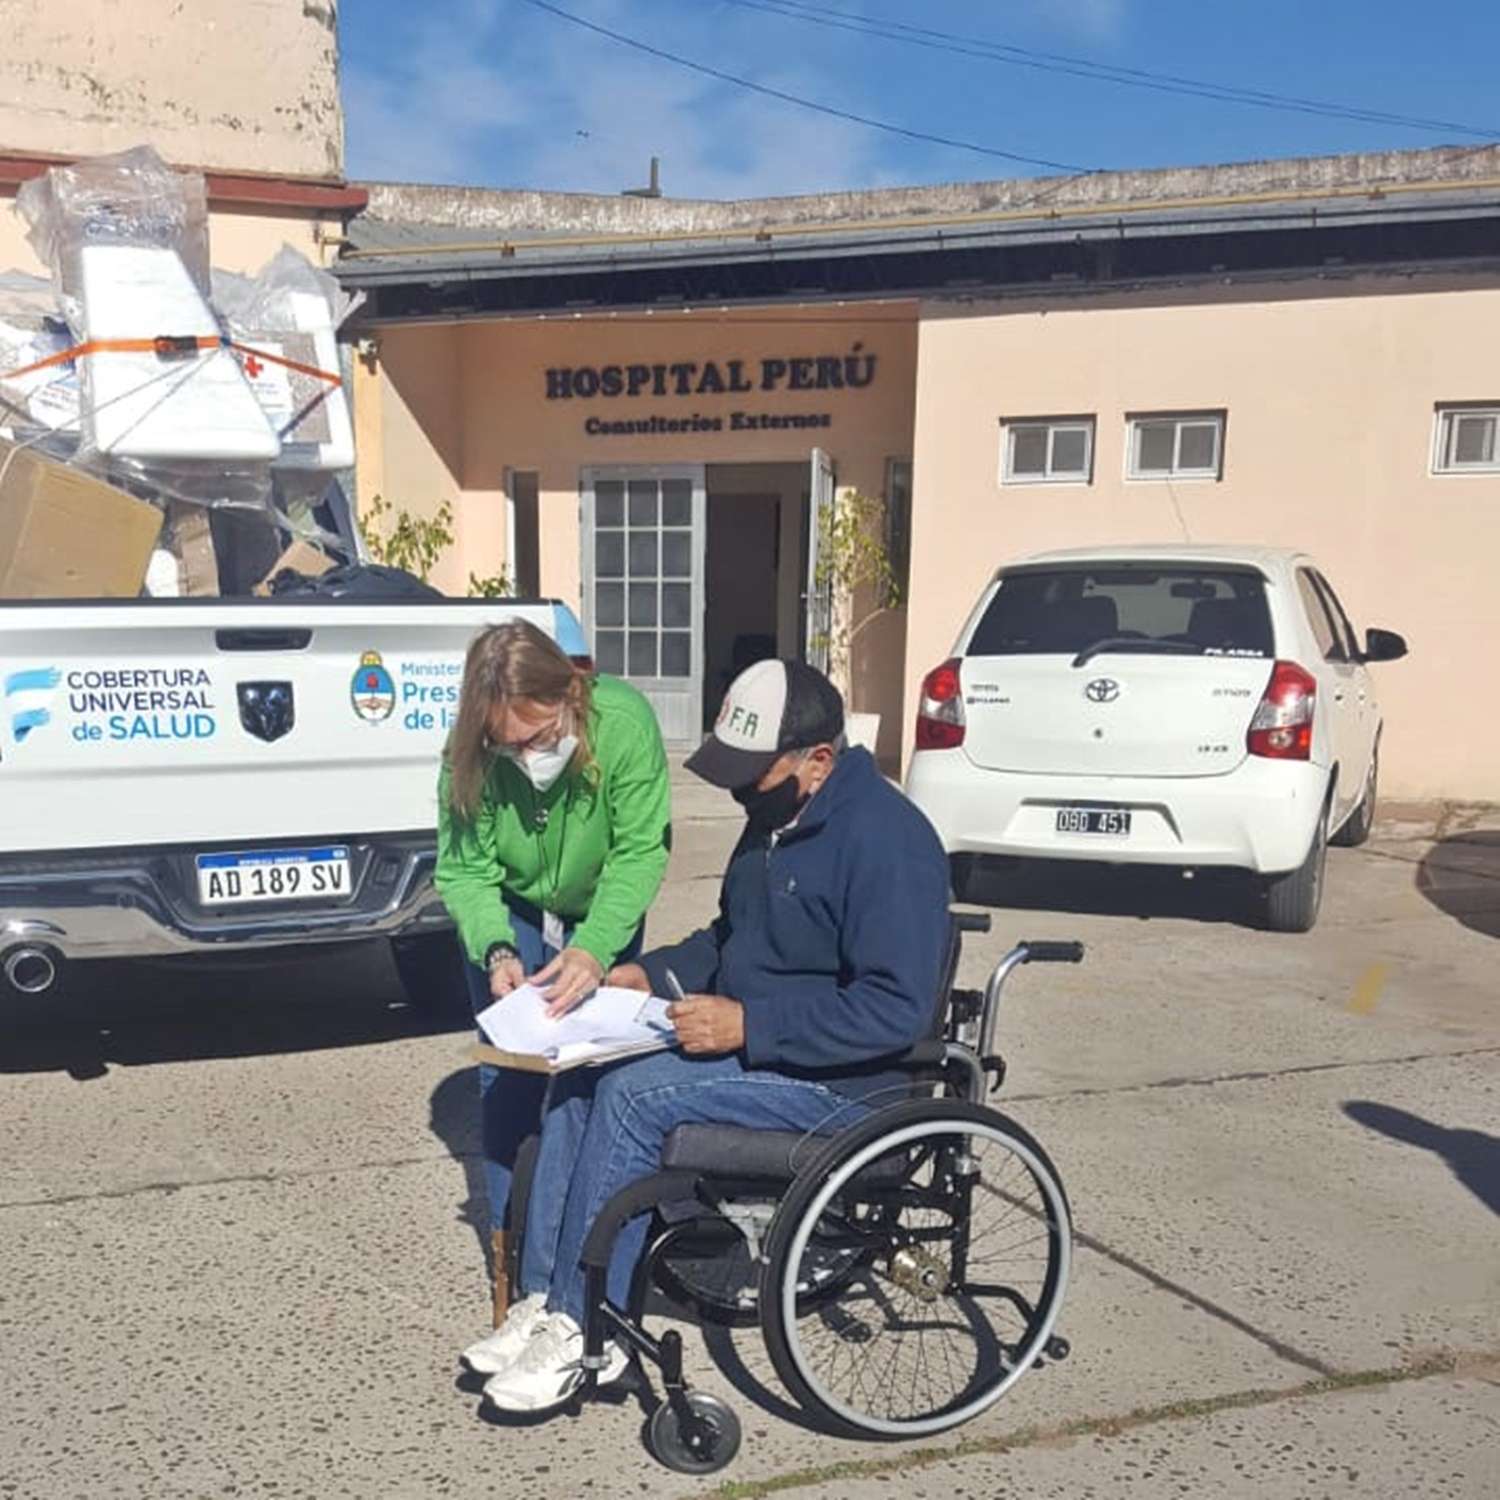 El Hospital Perú recibió una silla de ruedas